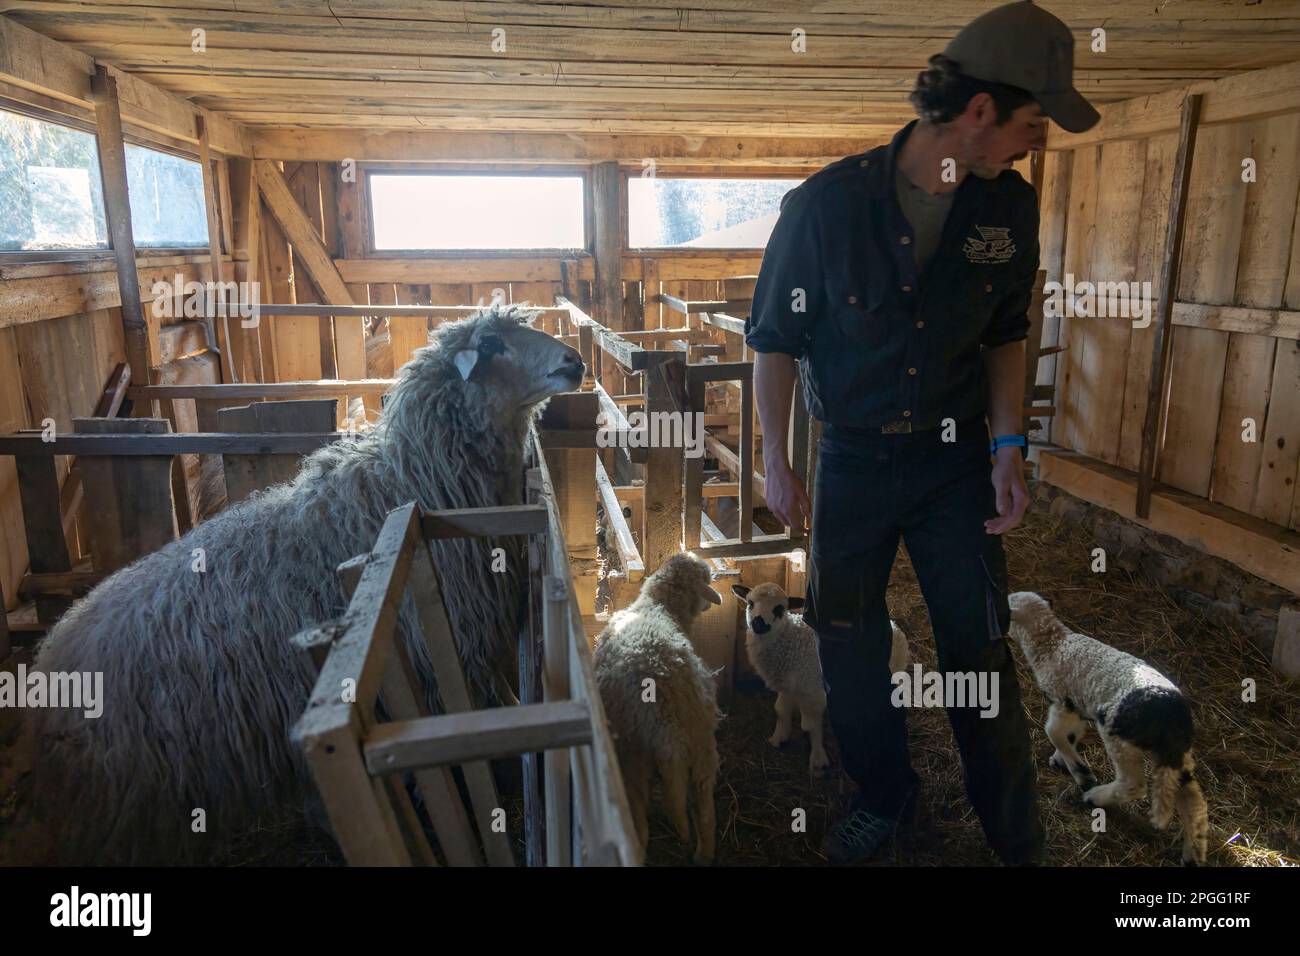 Éleveur nourrissant un mouton avec un seau de nourriture. Travailler avec des animaux domestiques sur la ferme Banque D'Images